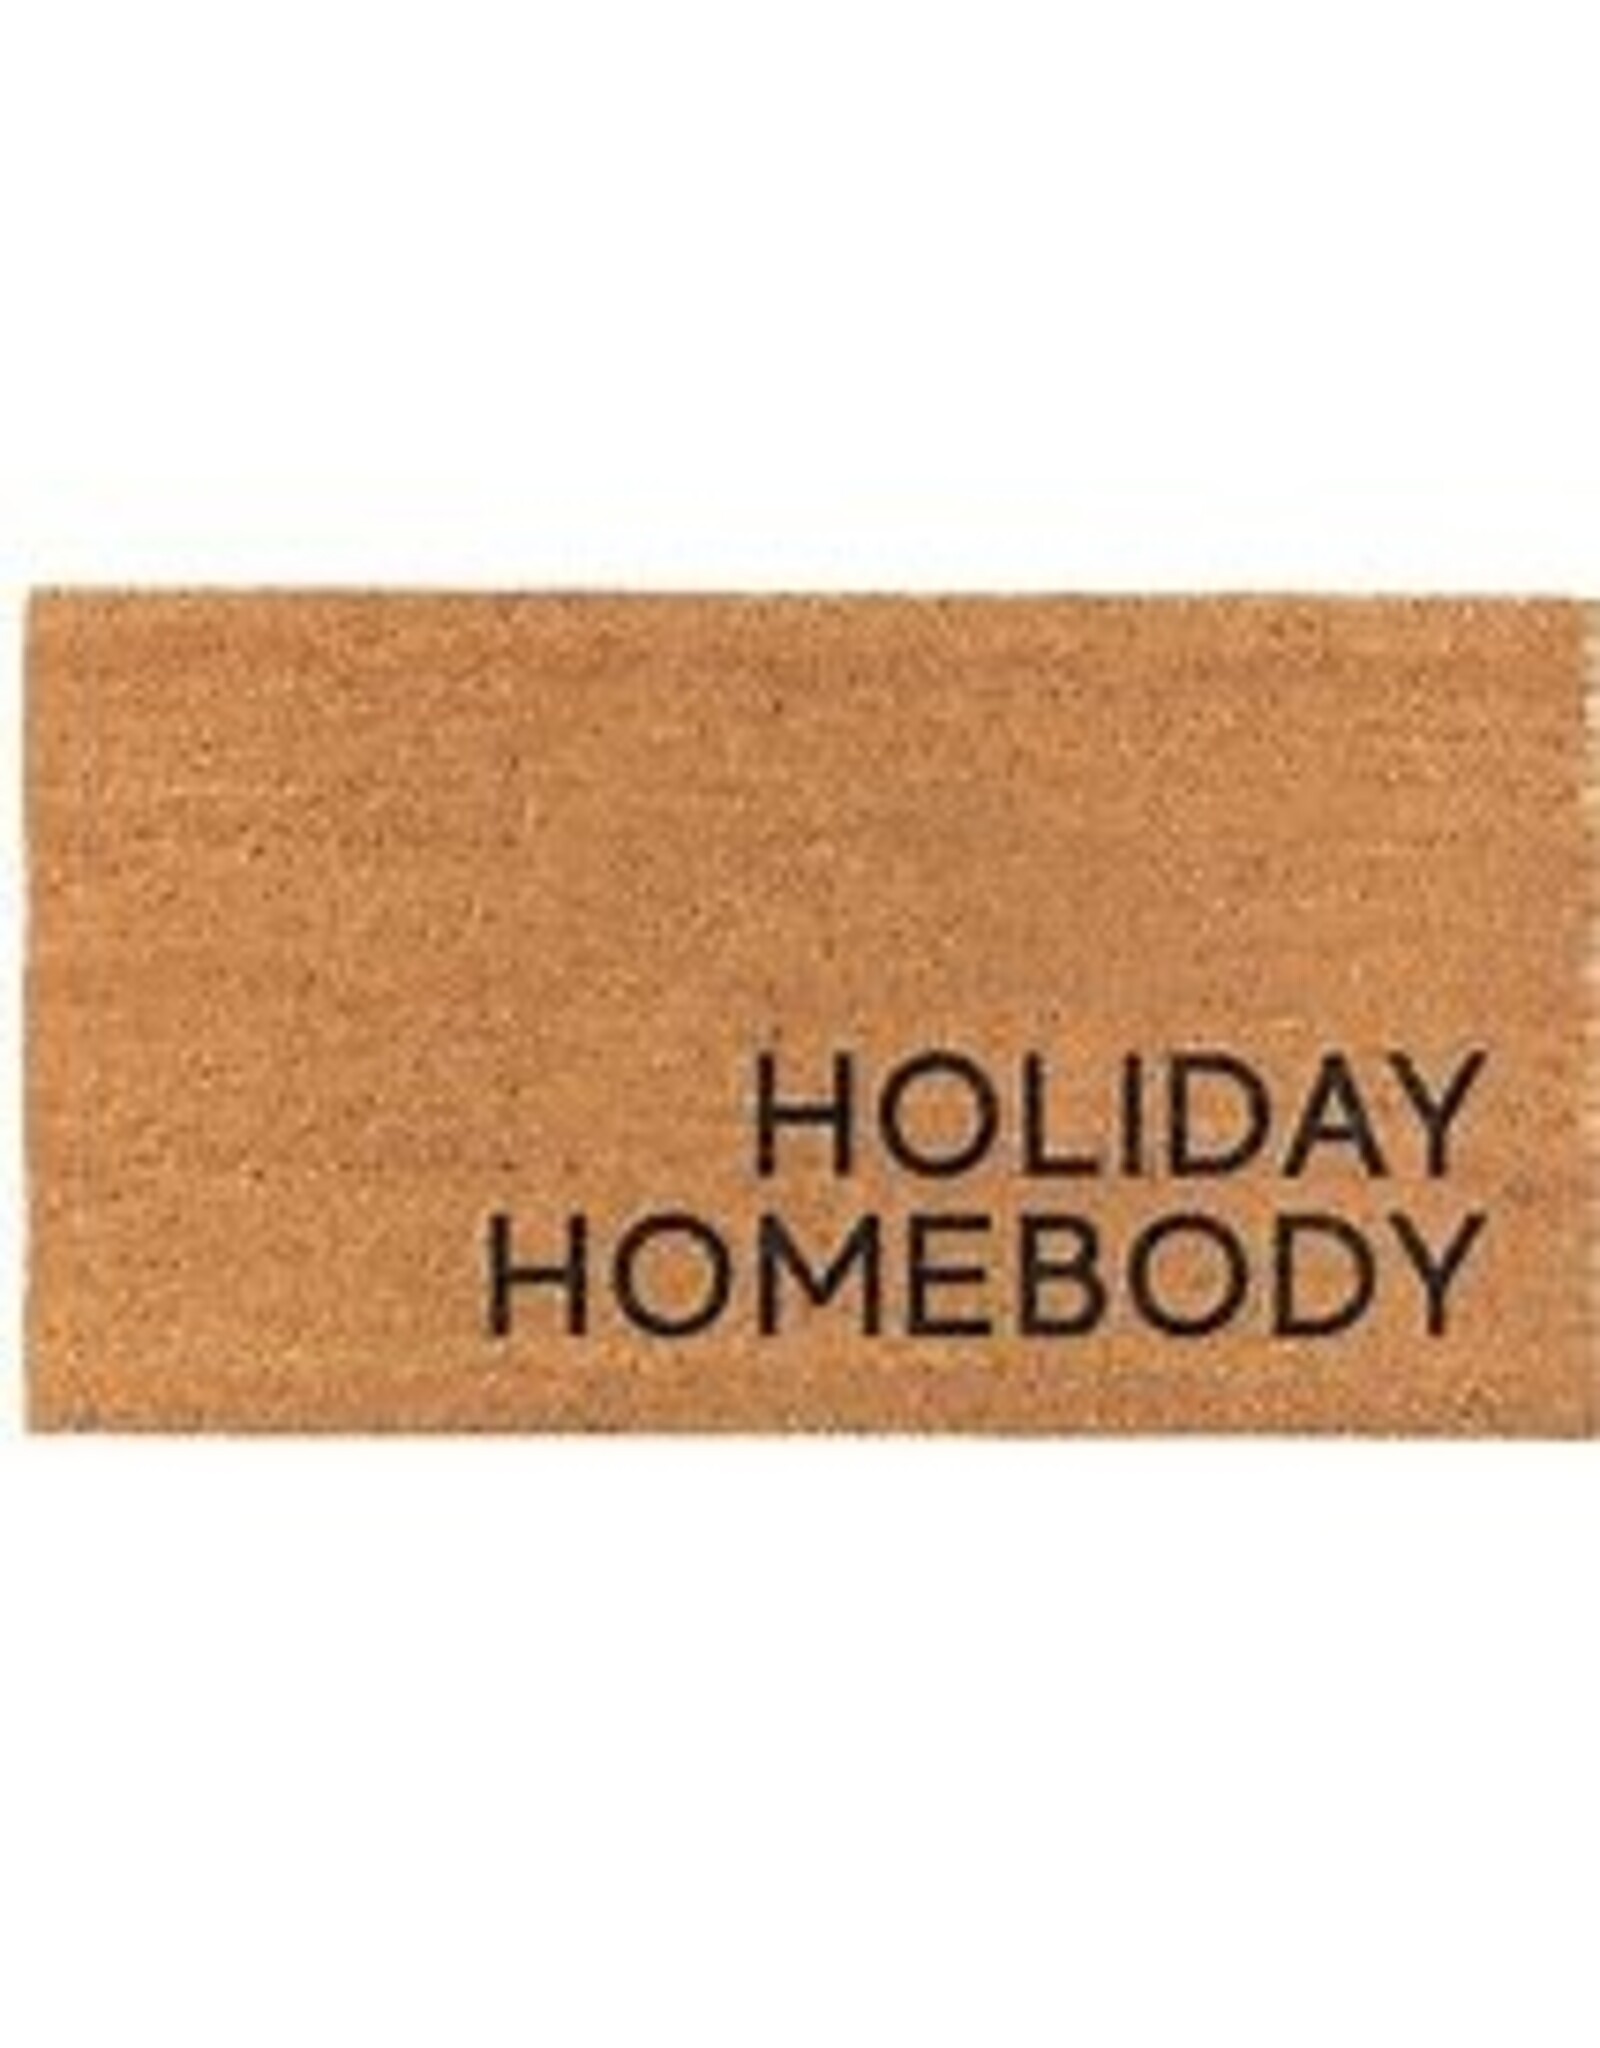 Santa Barbara Designs Large Doormat - Holiday Homebody